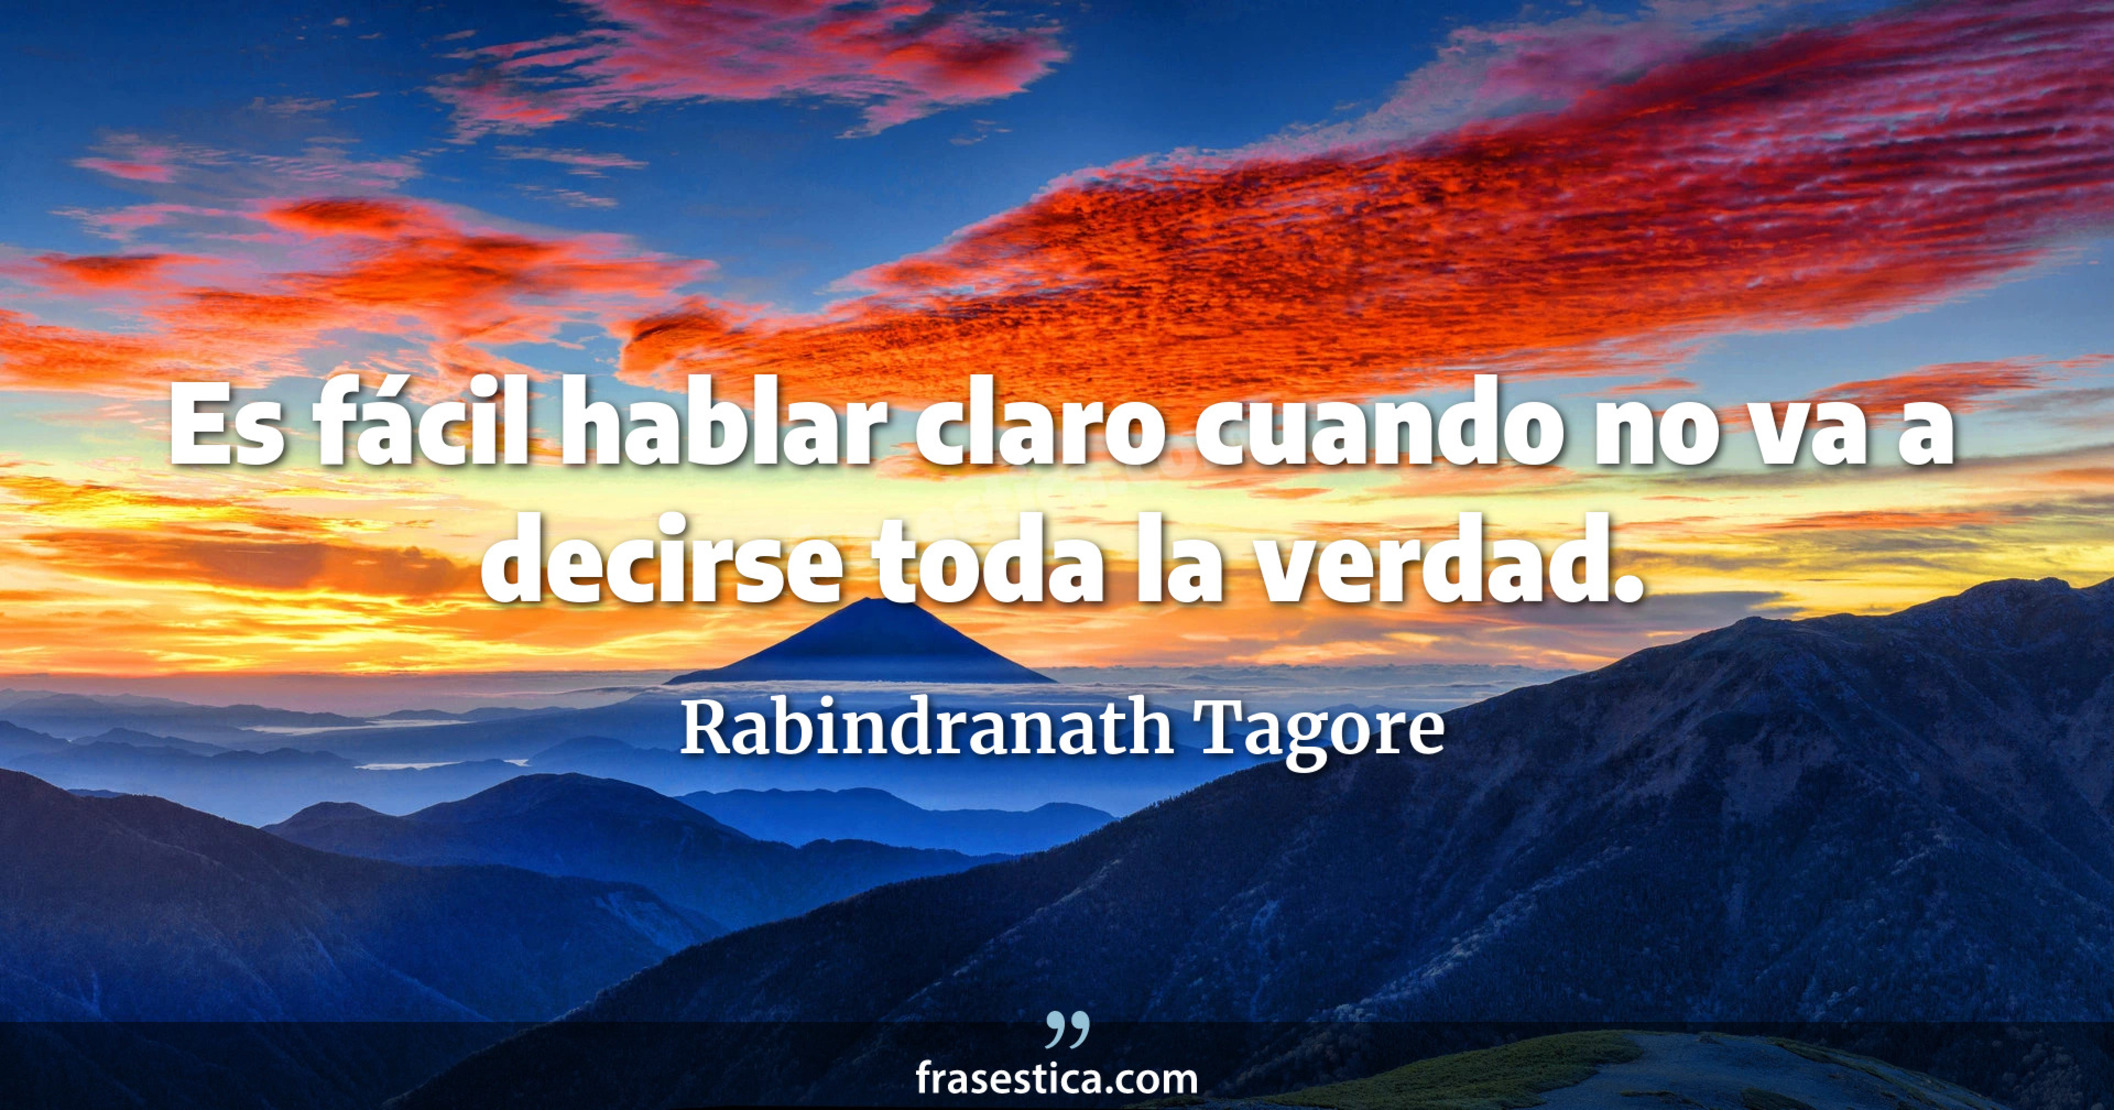 Es fácil hablar claro cuando no va a decirse toda la verdad. - Rabindranath Tagore